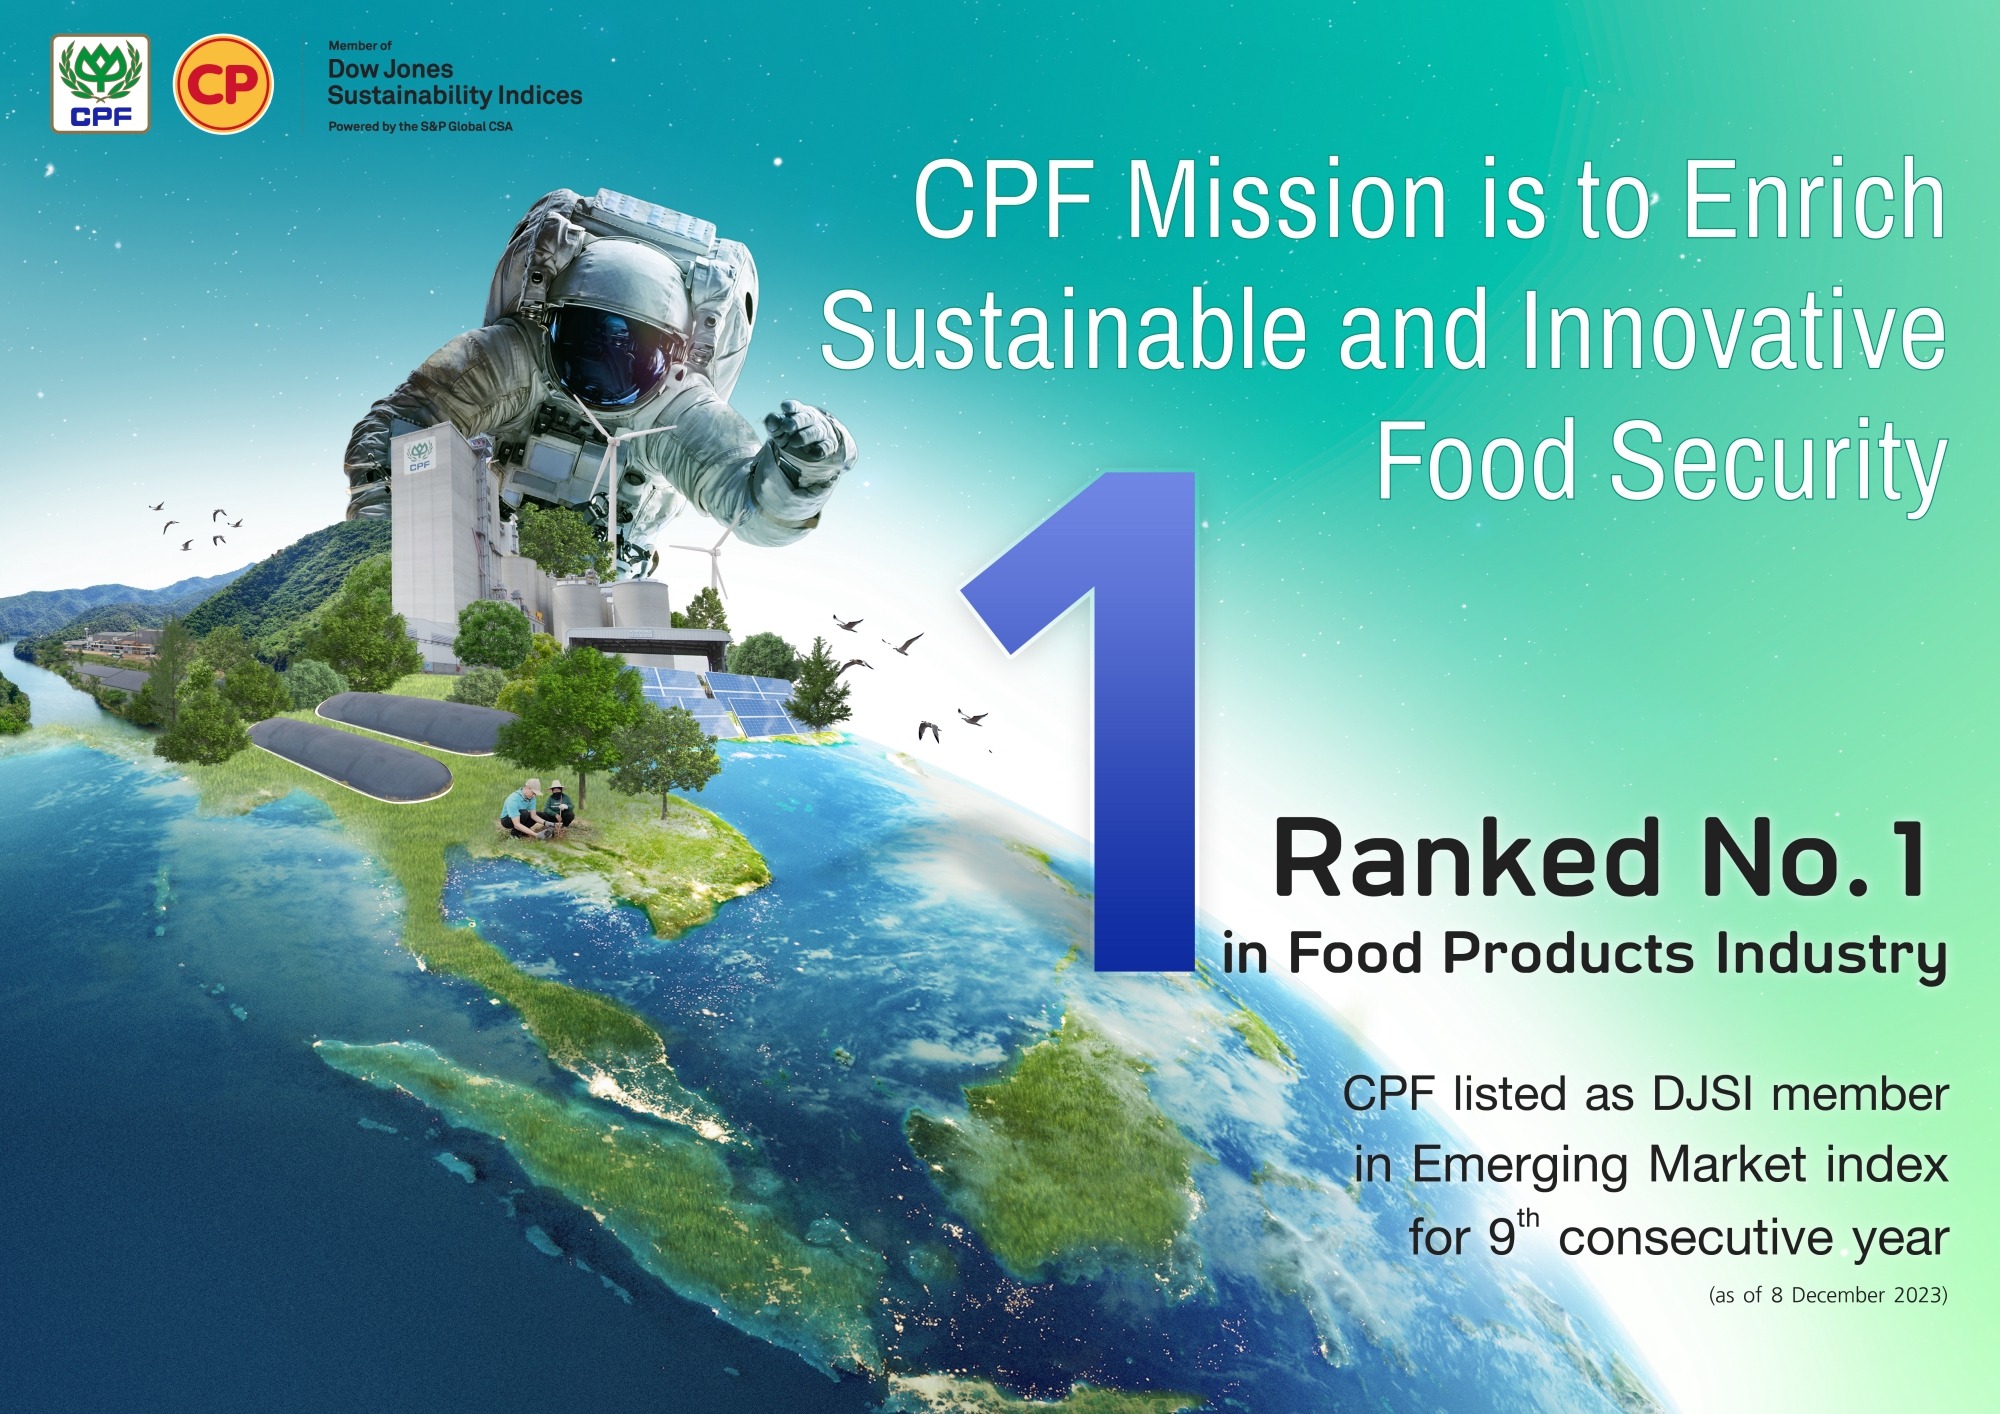 ซีพีเอฟ คว้าอันดับ 1 ดัชนีความยั่งยืน DJSI กลุ่มอุตสาหกรรมผลิตภัณฑ์อาหารของโลก ปี 2023